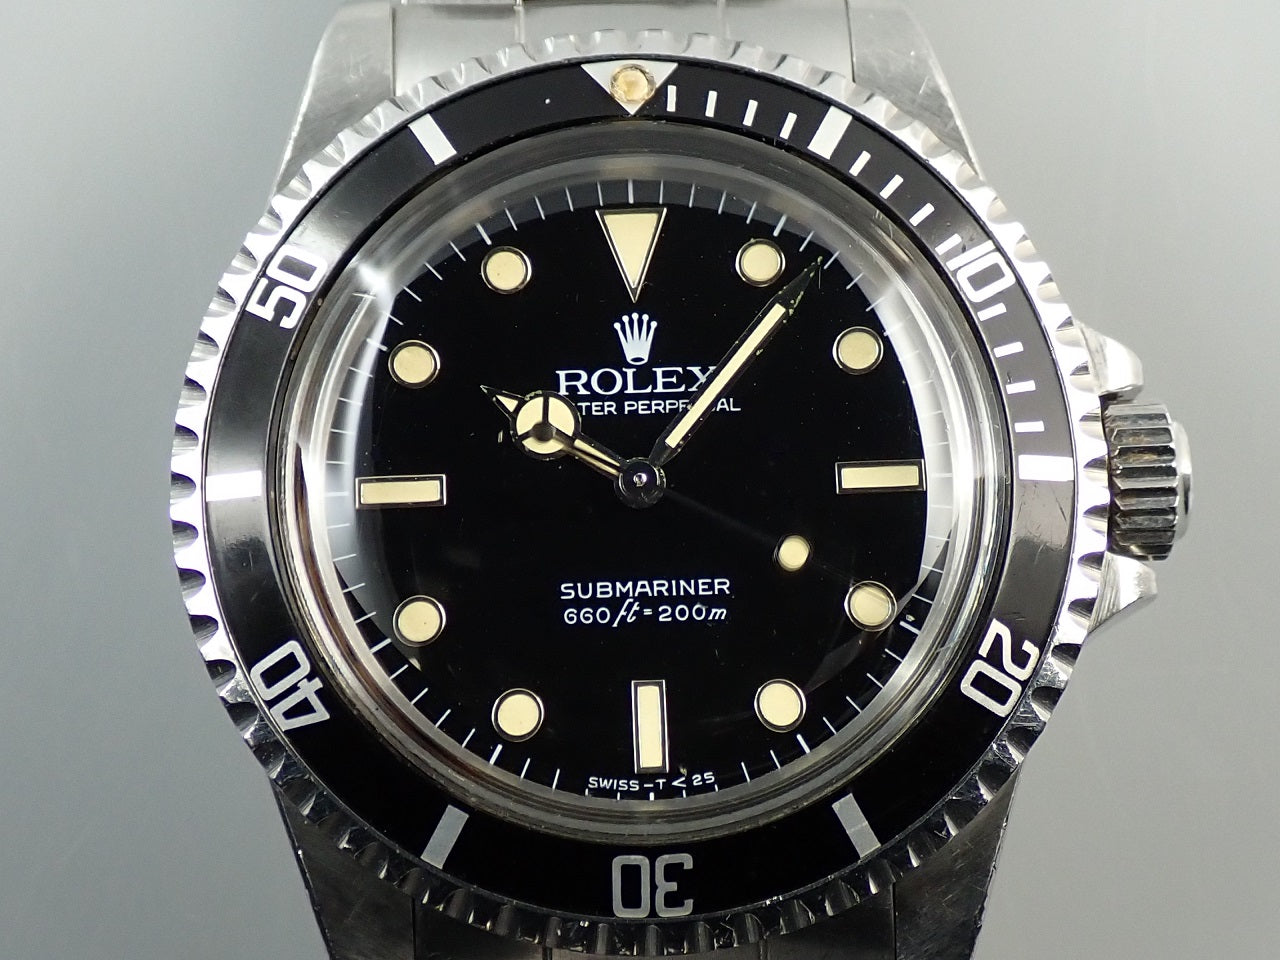 Rolex Submariner &lt;Warranty, Box, etc.&gt;